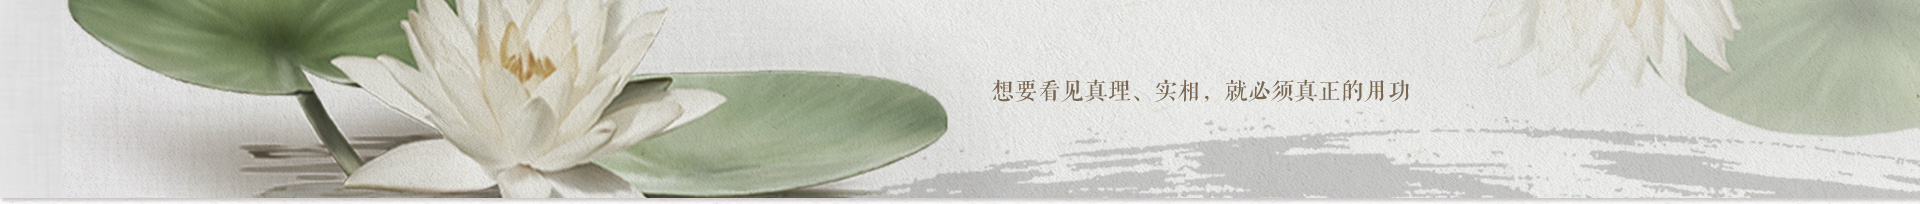 2012年12月9日—15日福建资国寺七日禅修法讯